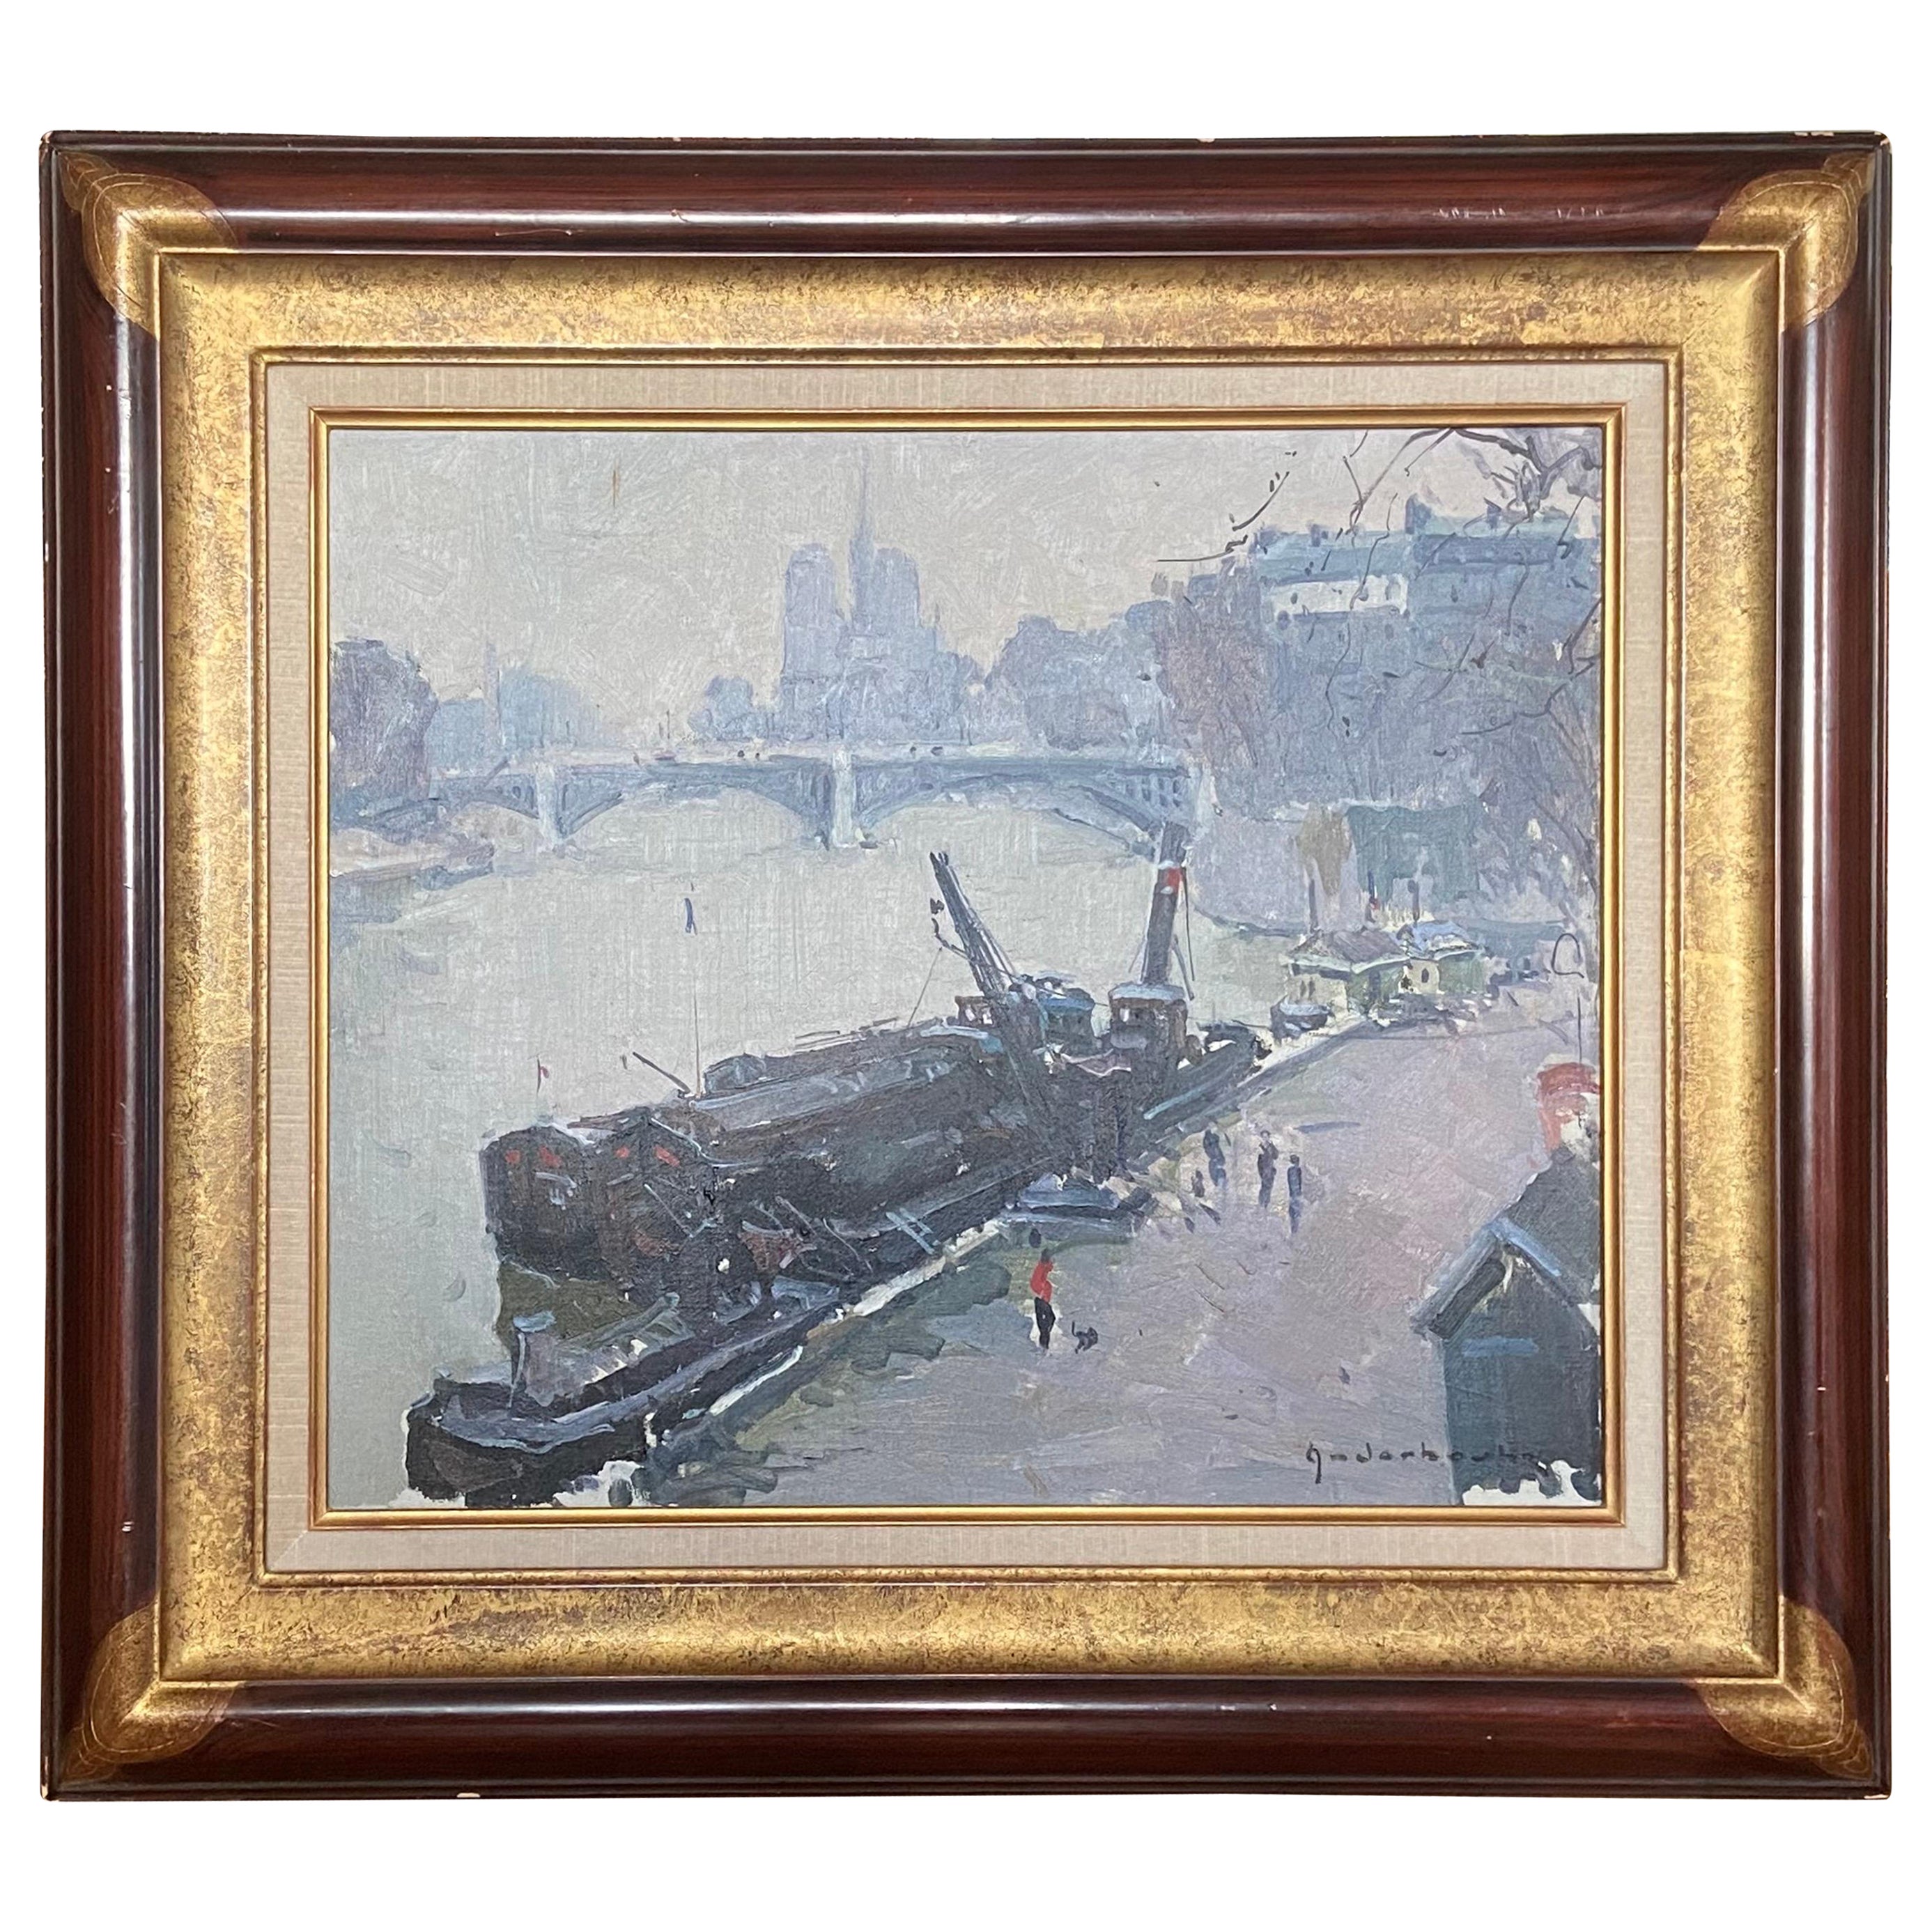 Ansicht von Paris auf der Seine, Öl auf Leinwand, signiert vom Künstler Paul Jean Anderbouhr 